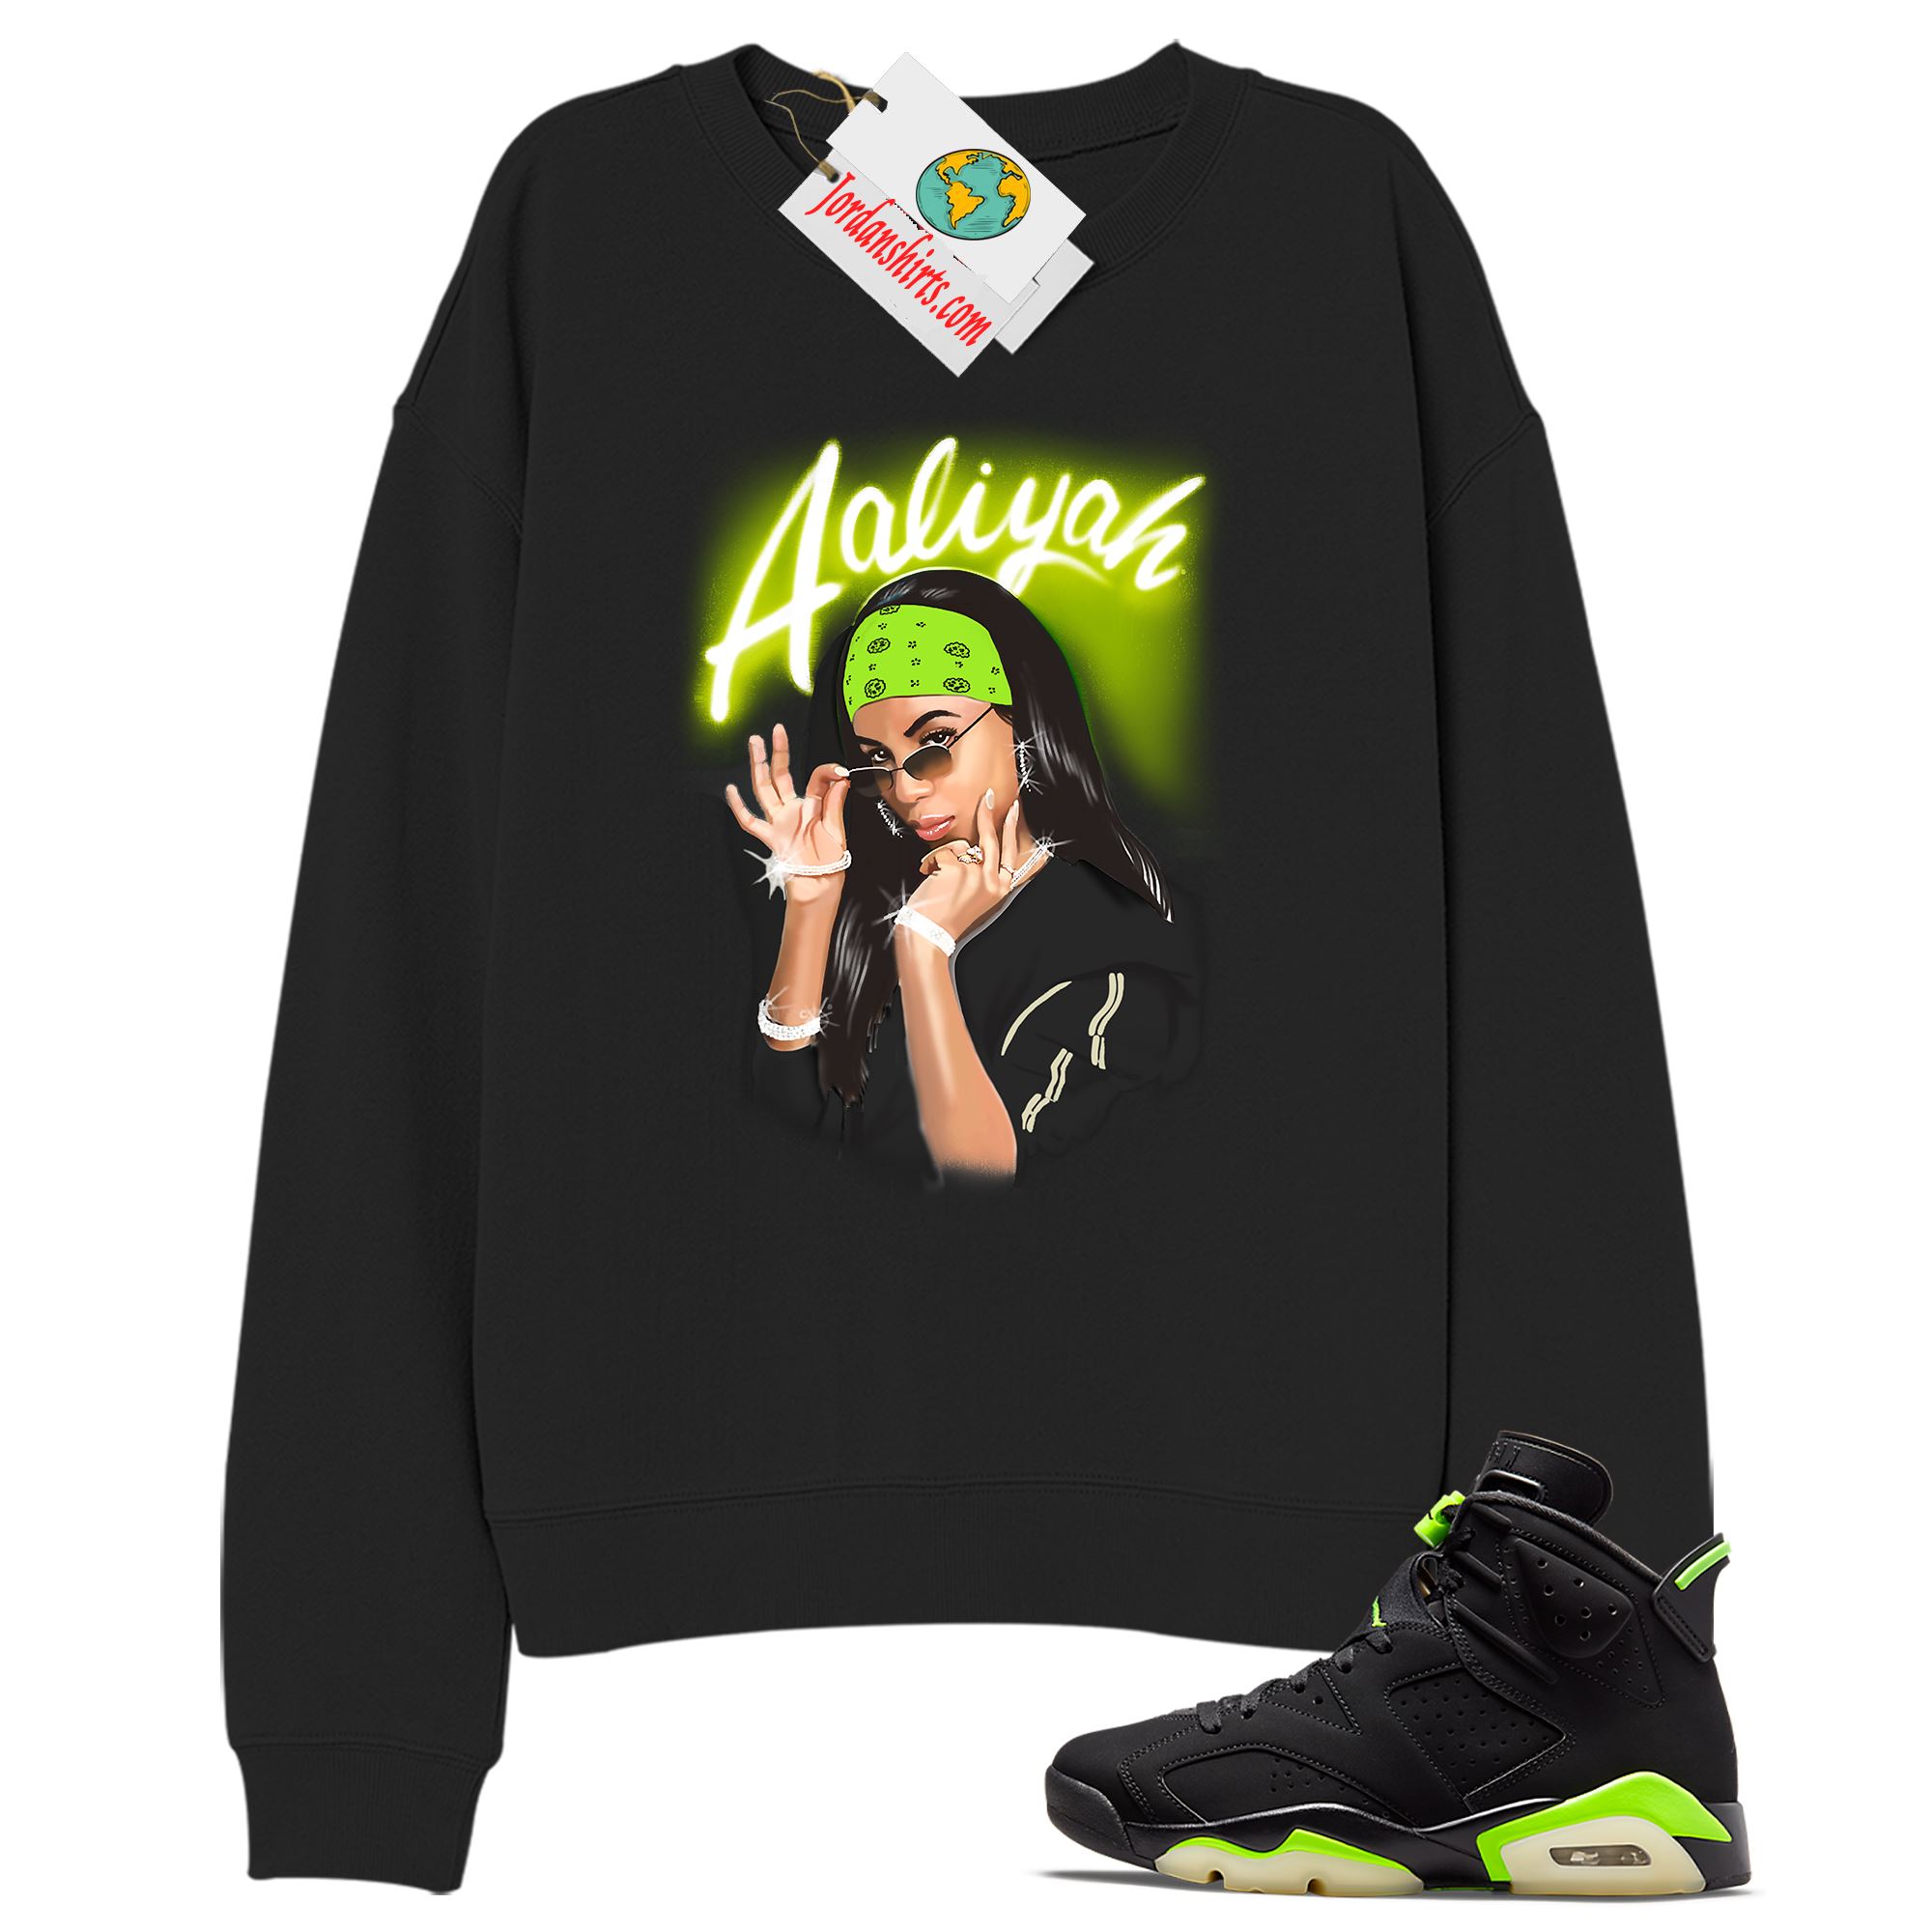 Jordan 6 Sweatshirt, Aaliyah Airbrush Black Sweatshirt Air Jordan 6 Electric Green 6s Plus Size Up To 5xl